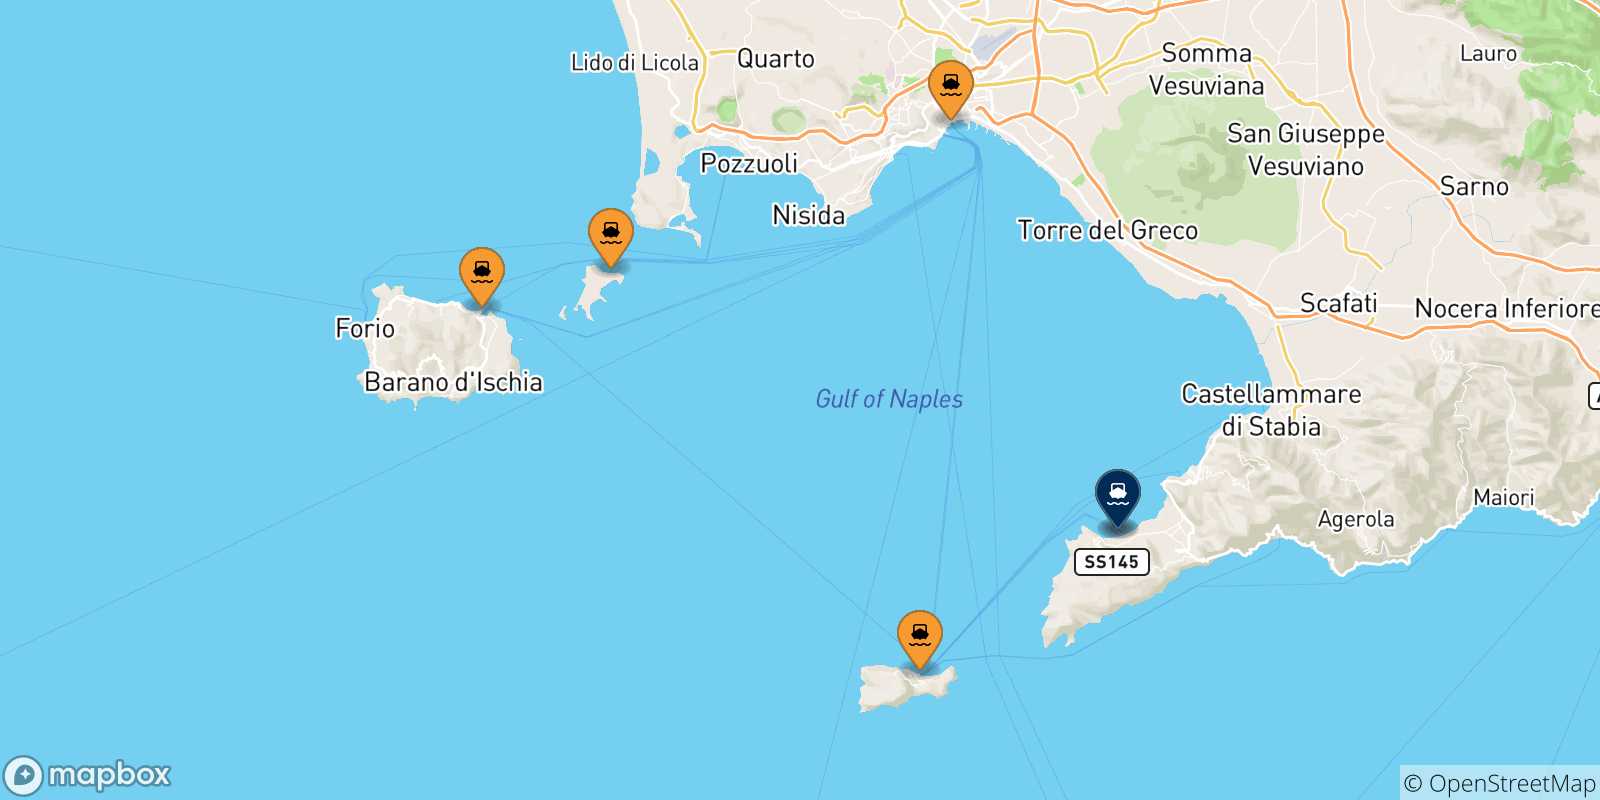 Mappa delle possibili rotte tra l'Italia e Sorrento